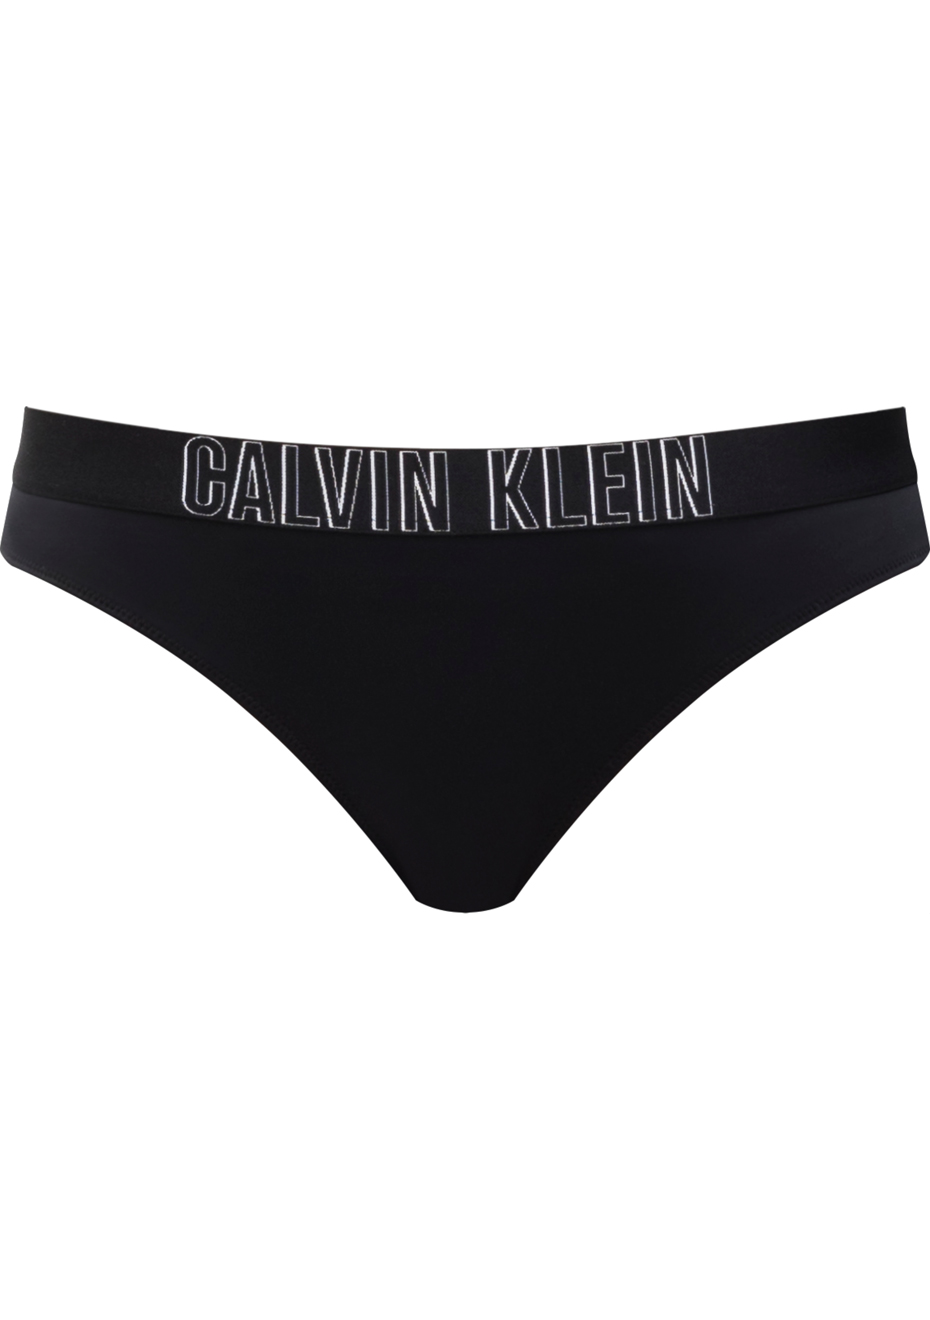 calvin klein black underwear women's